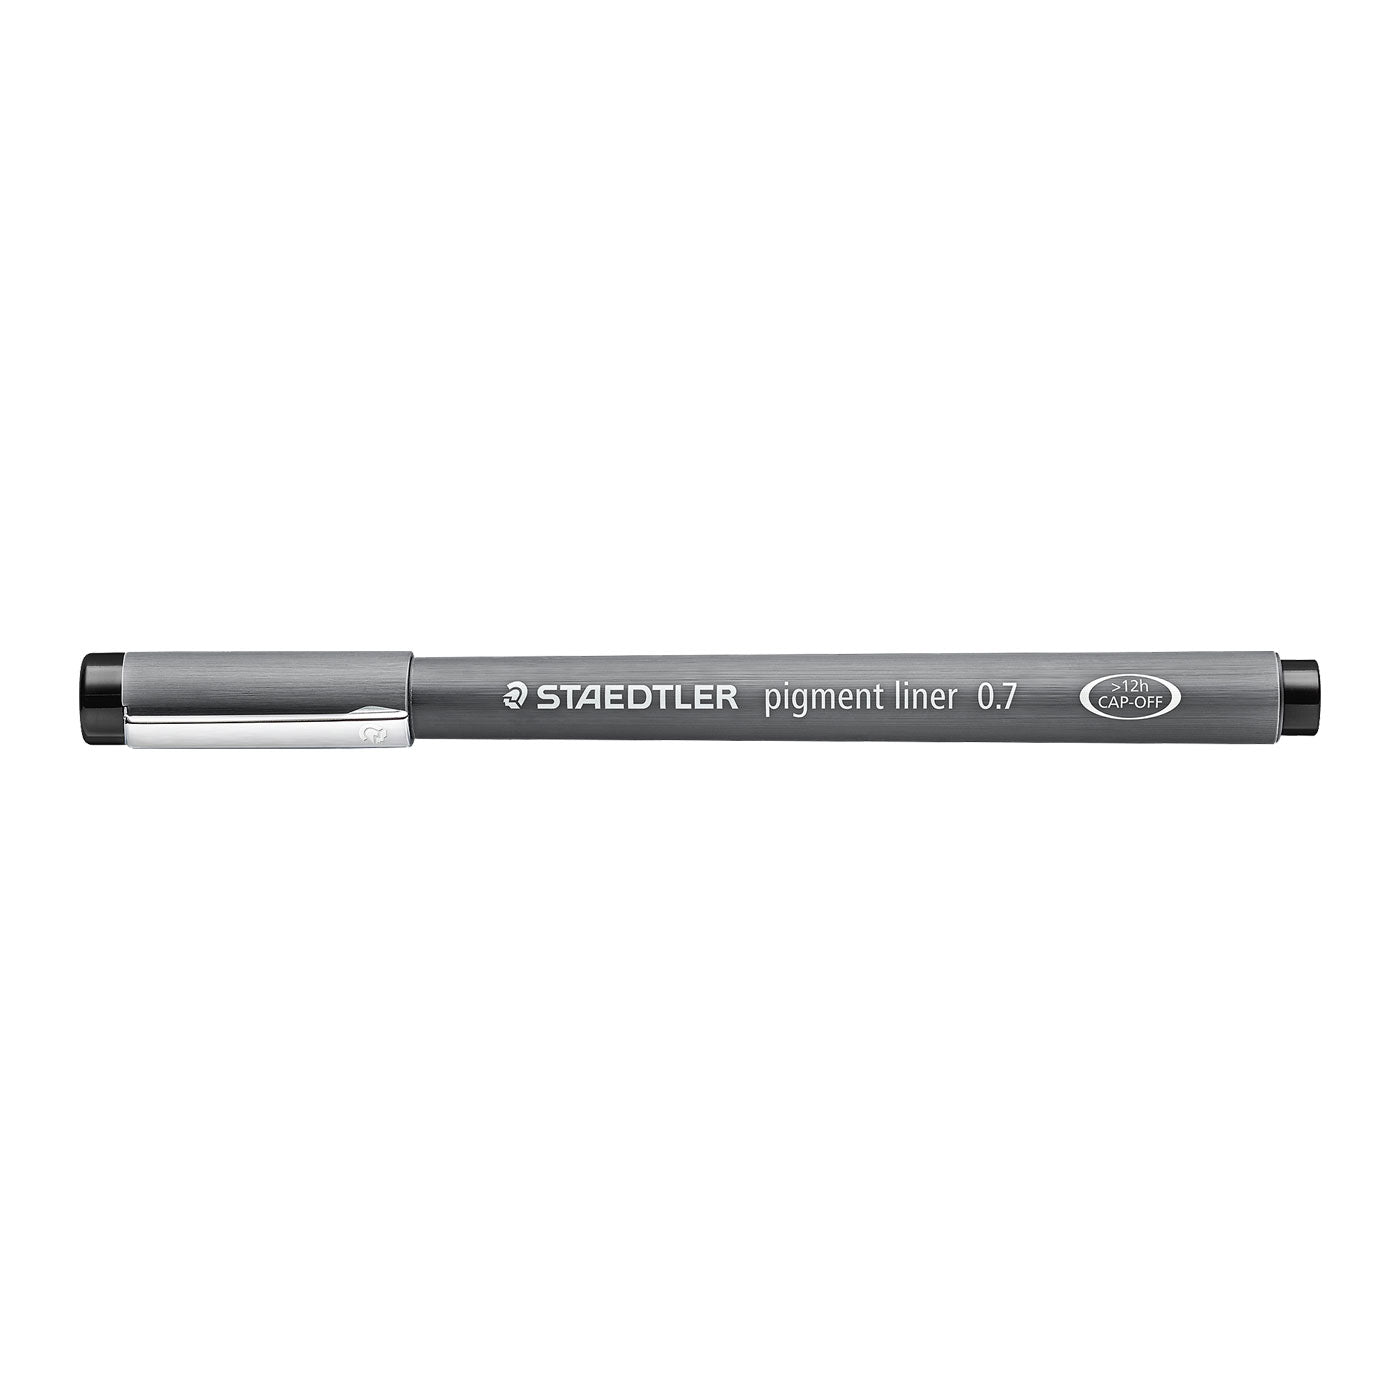 Staedtler Marsgraphic Fineliner Pigment Ink Pen Black 0.7mm